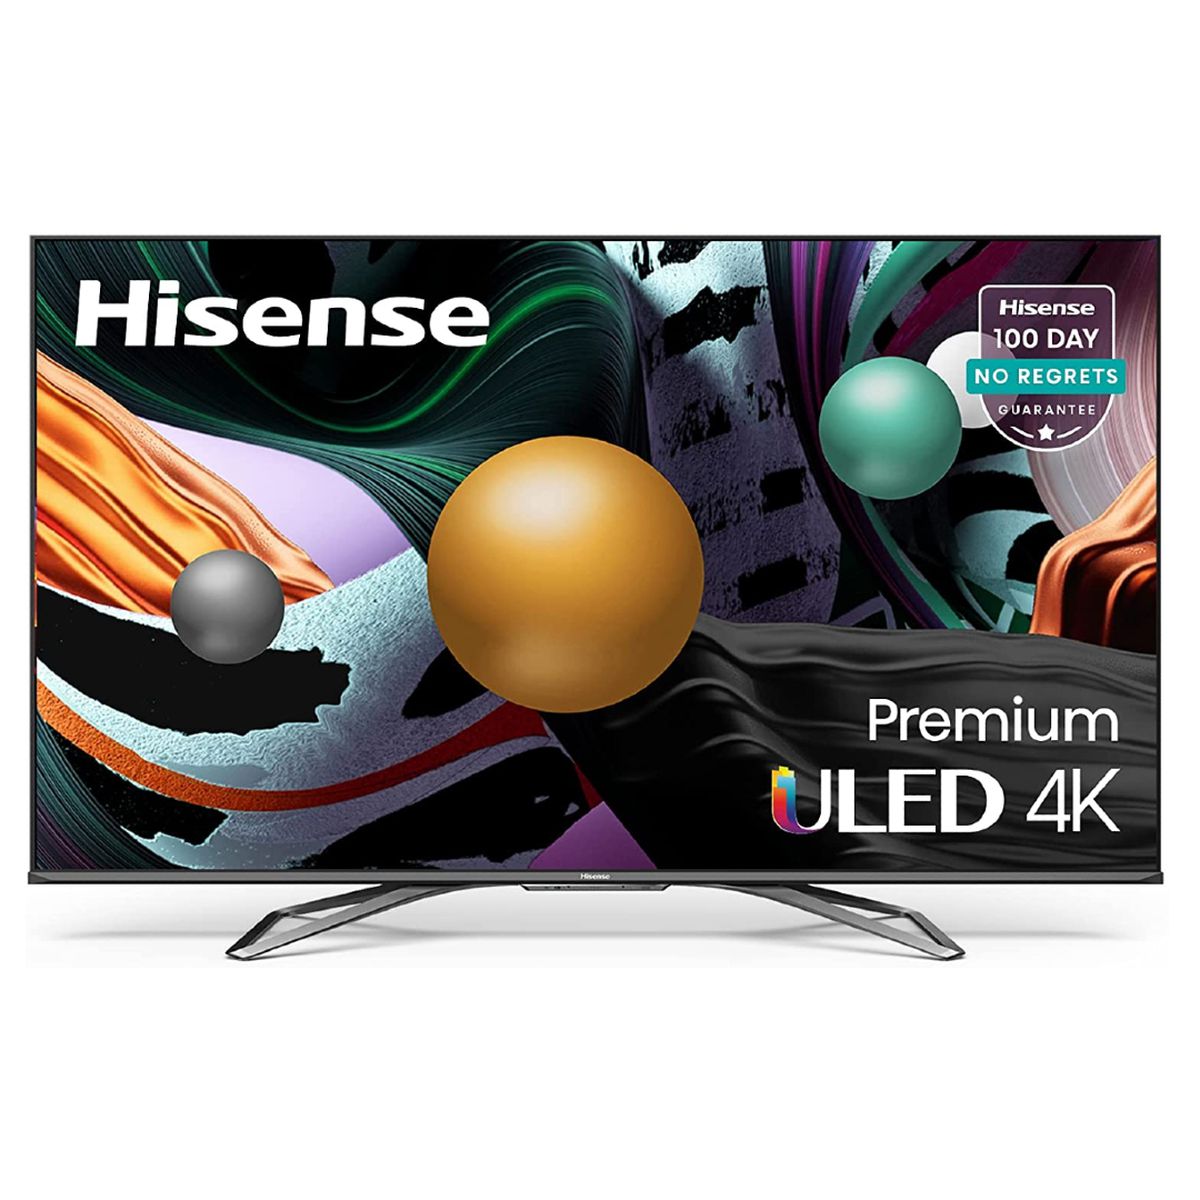 Hisense ULED U8G 4K Smart TV Press Image on White Background